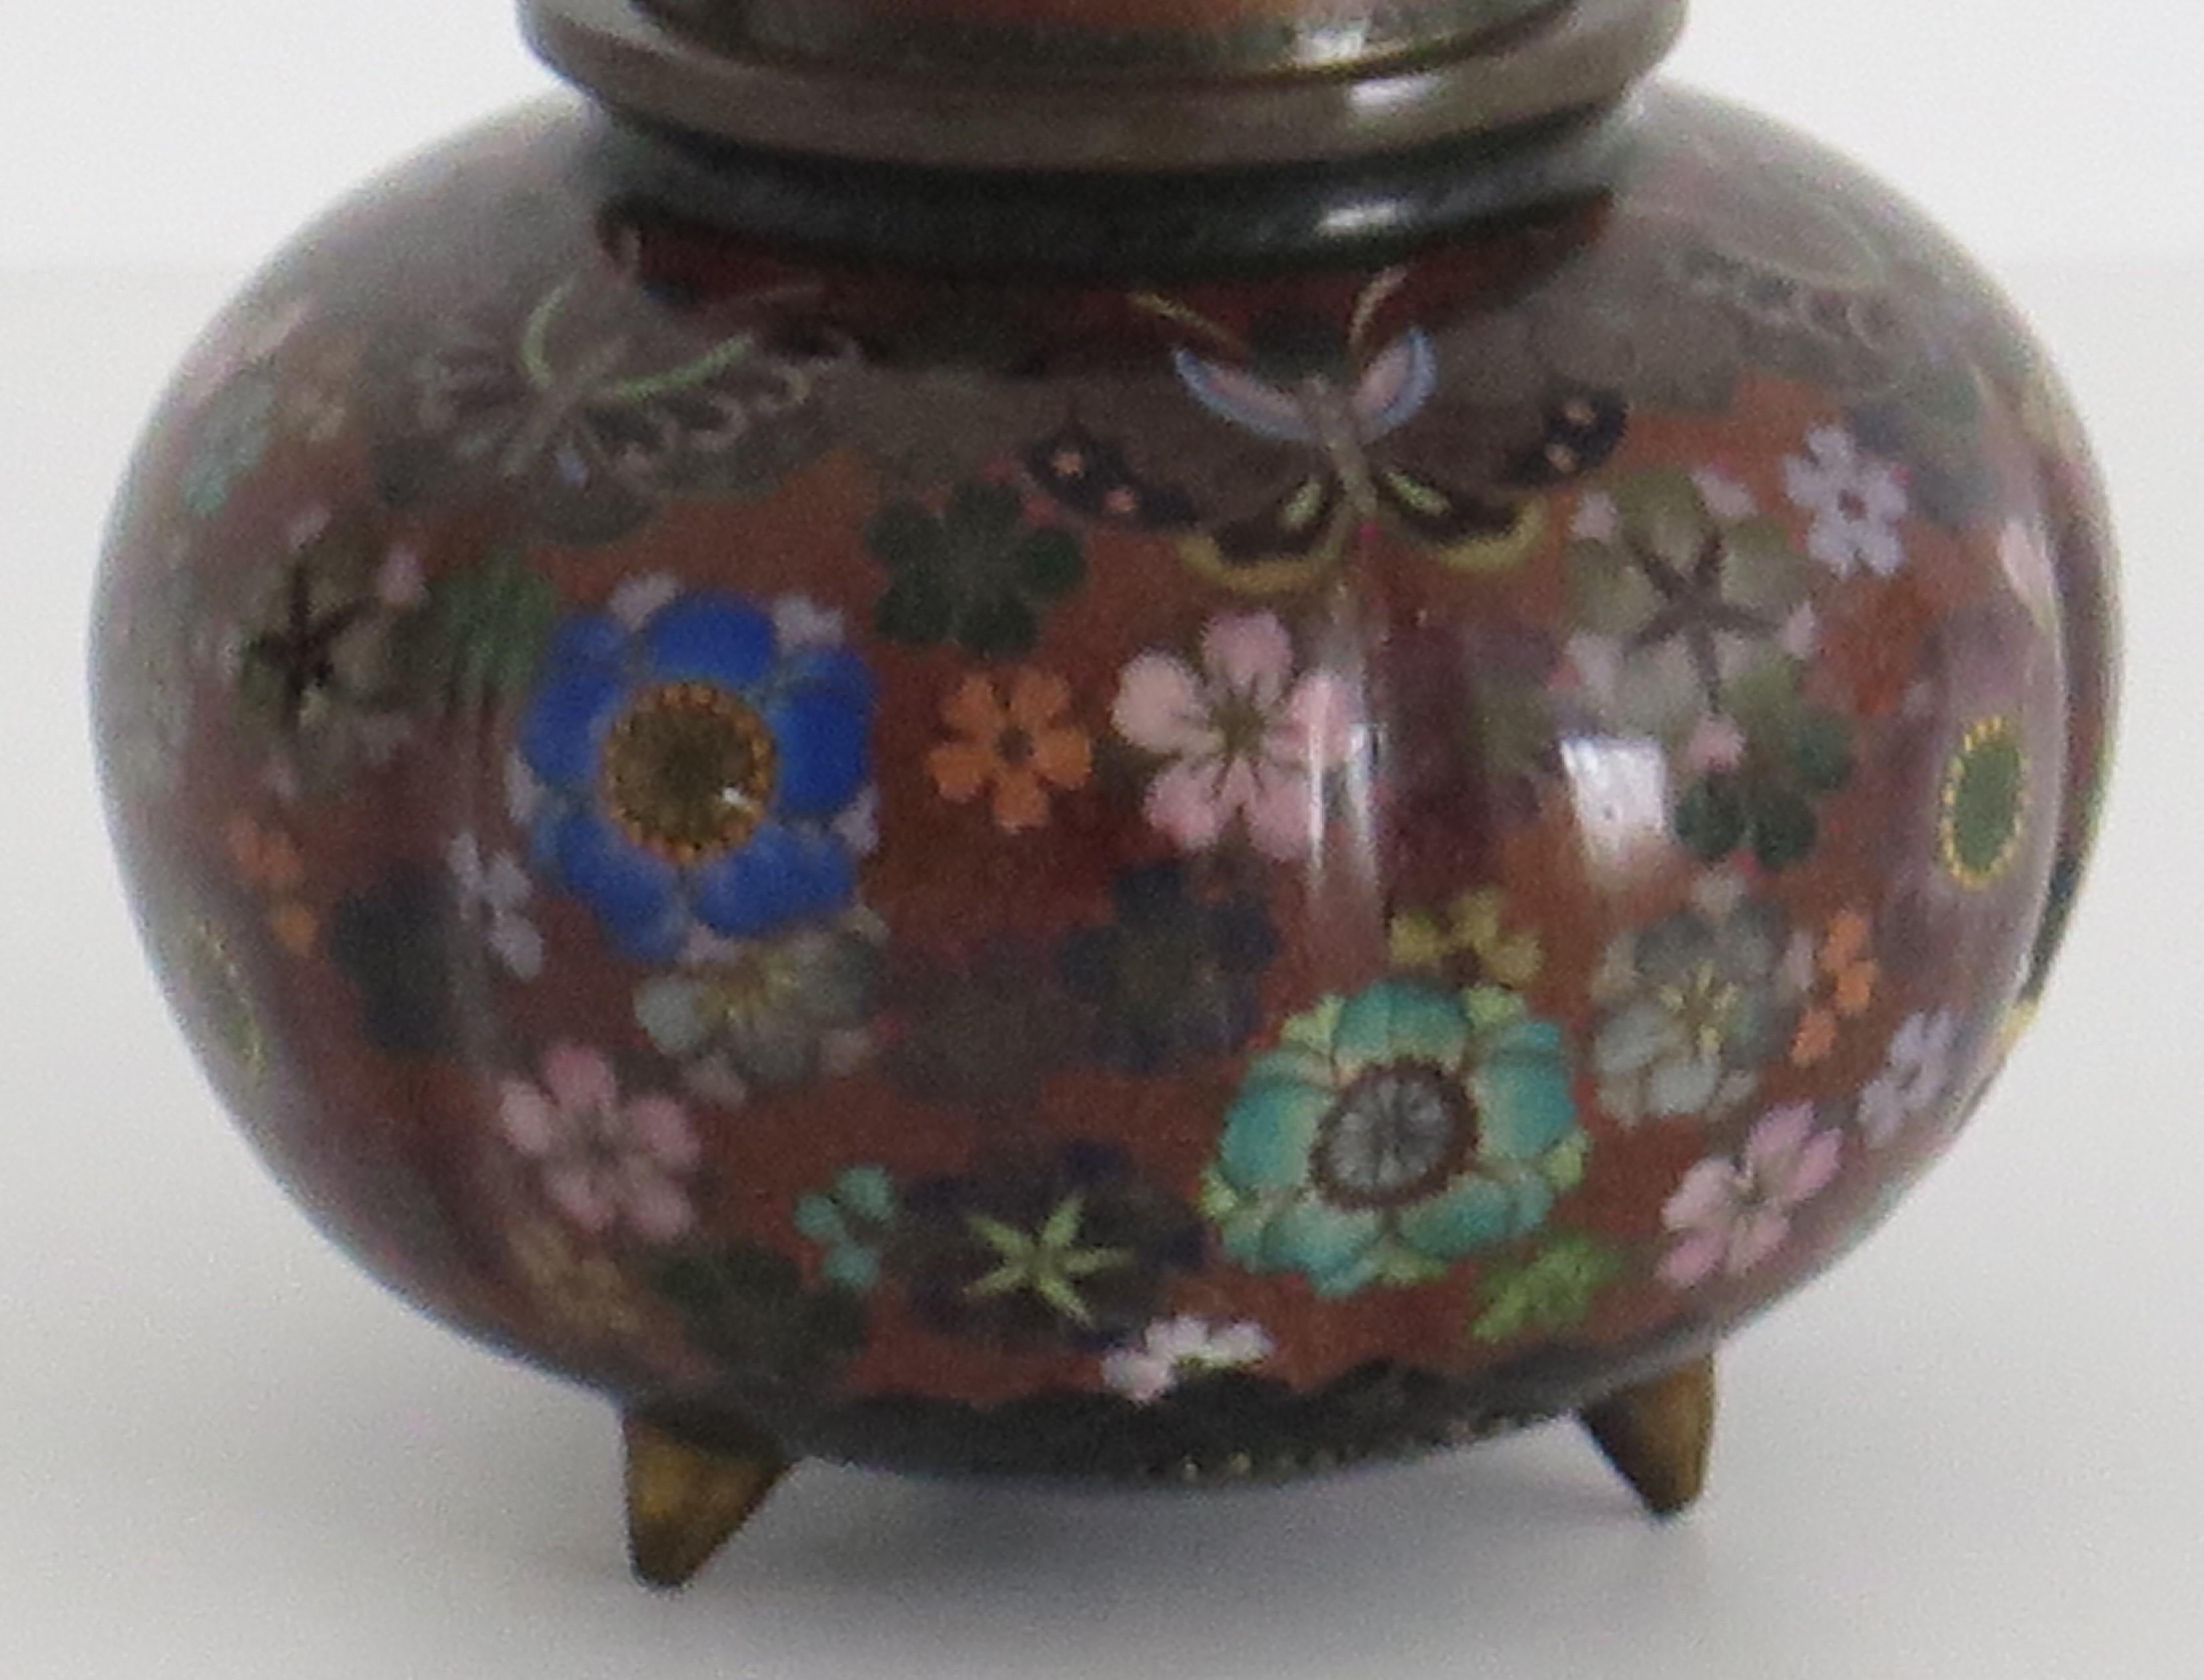 Dies ist ein sehr dekorativer Cloisonné-Deckelkrug, der in Japan hergestellt wurde und aus dem 19. Jahrhundert, der frühen Meiji-Periode, um 1875 oder möglicherweise früher stammt.

Das Gefäß hat eine gute Form, eine zusammengedrückte kugelförmige